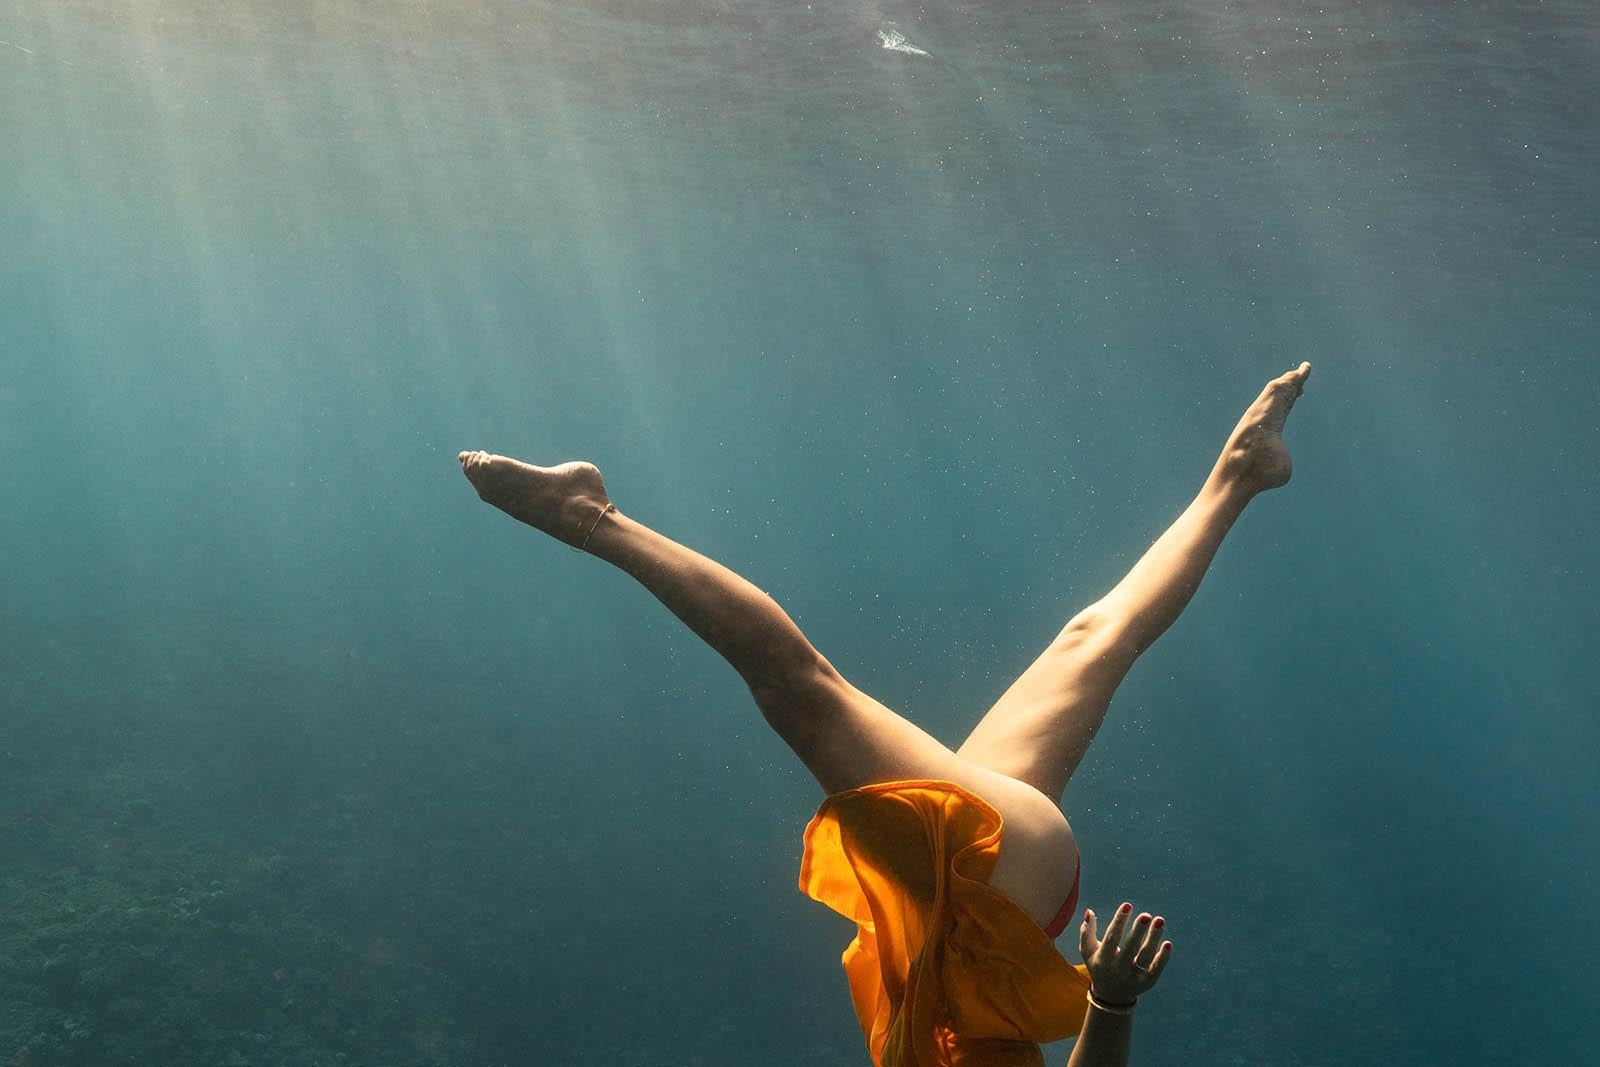 Synchronisiertes Schwimmen im Blau – Kunstdruck, Farbe unter Wasser, großes Foto (Zeitgenössisch), Photograph, von Olivier Borde